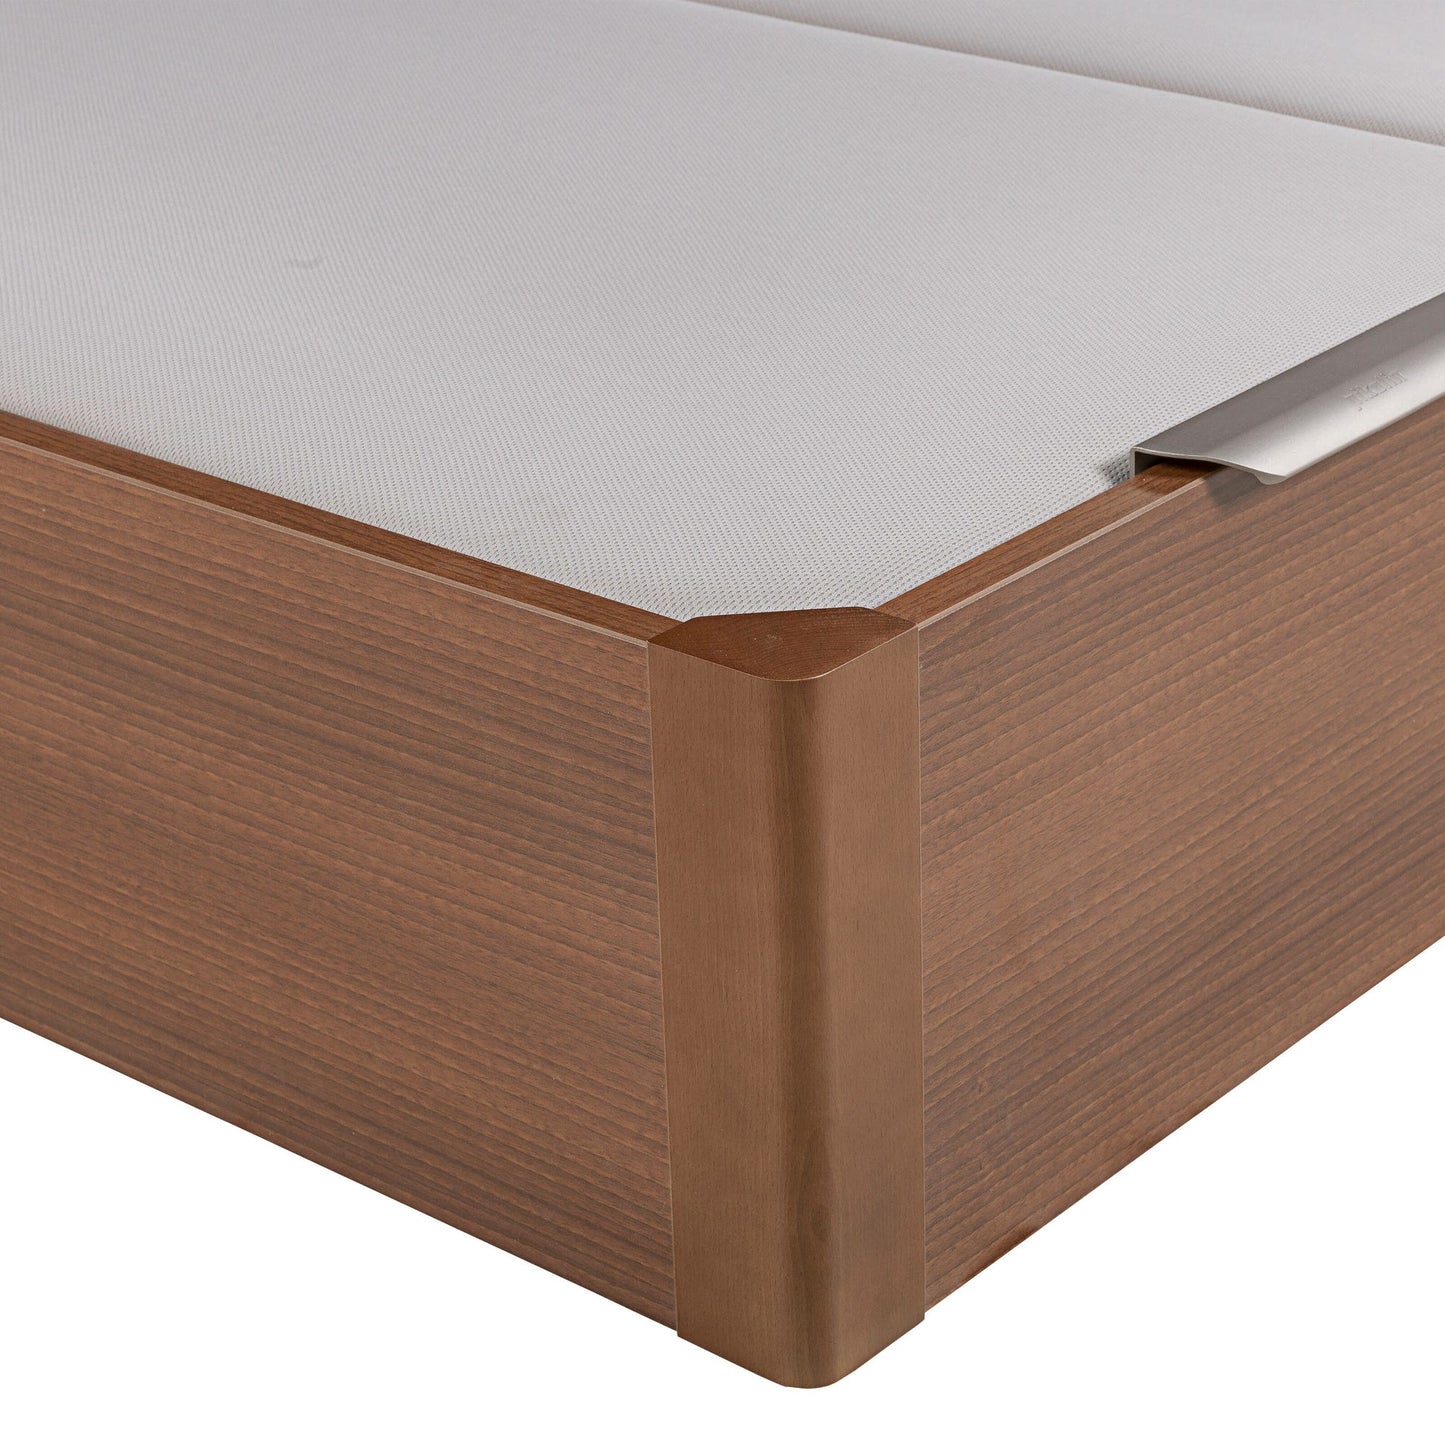 Canapé abatible de madera de tapa doble de color cerezo - DESIGN - 150x200